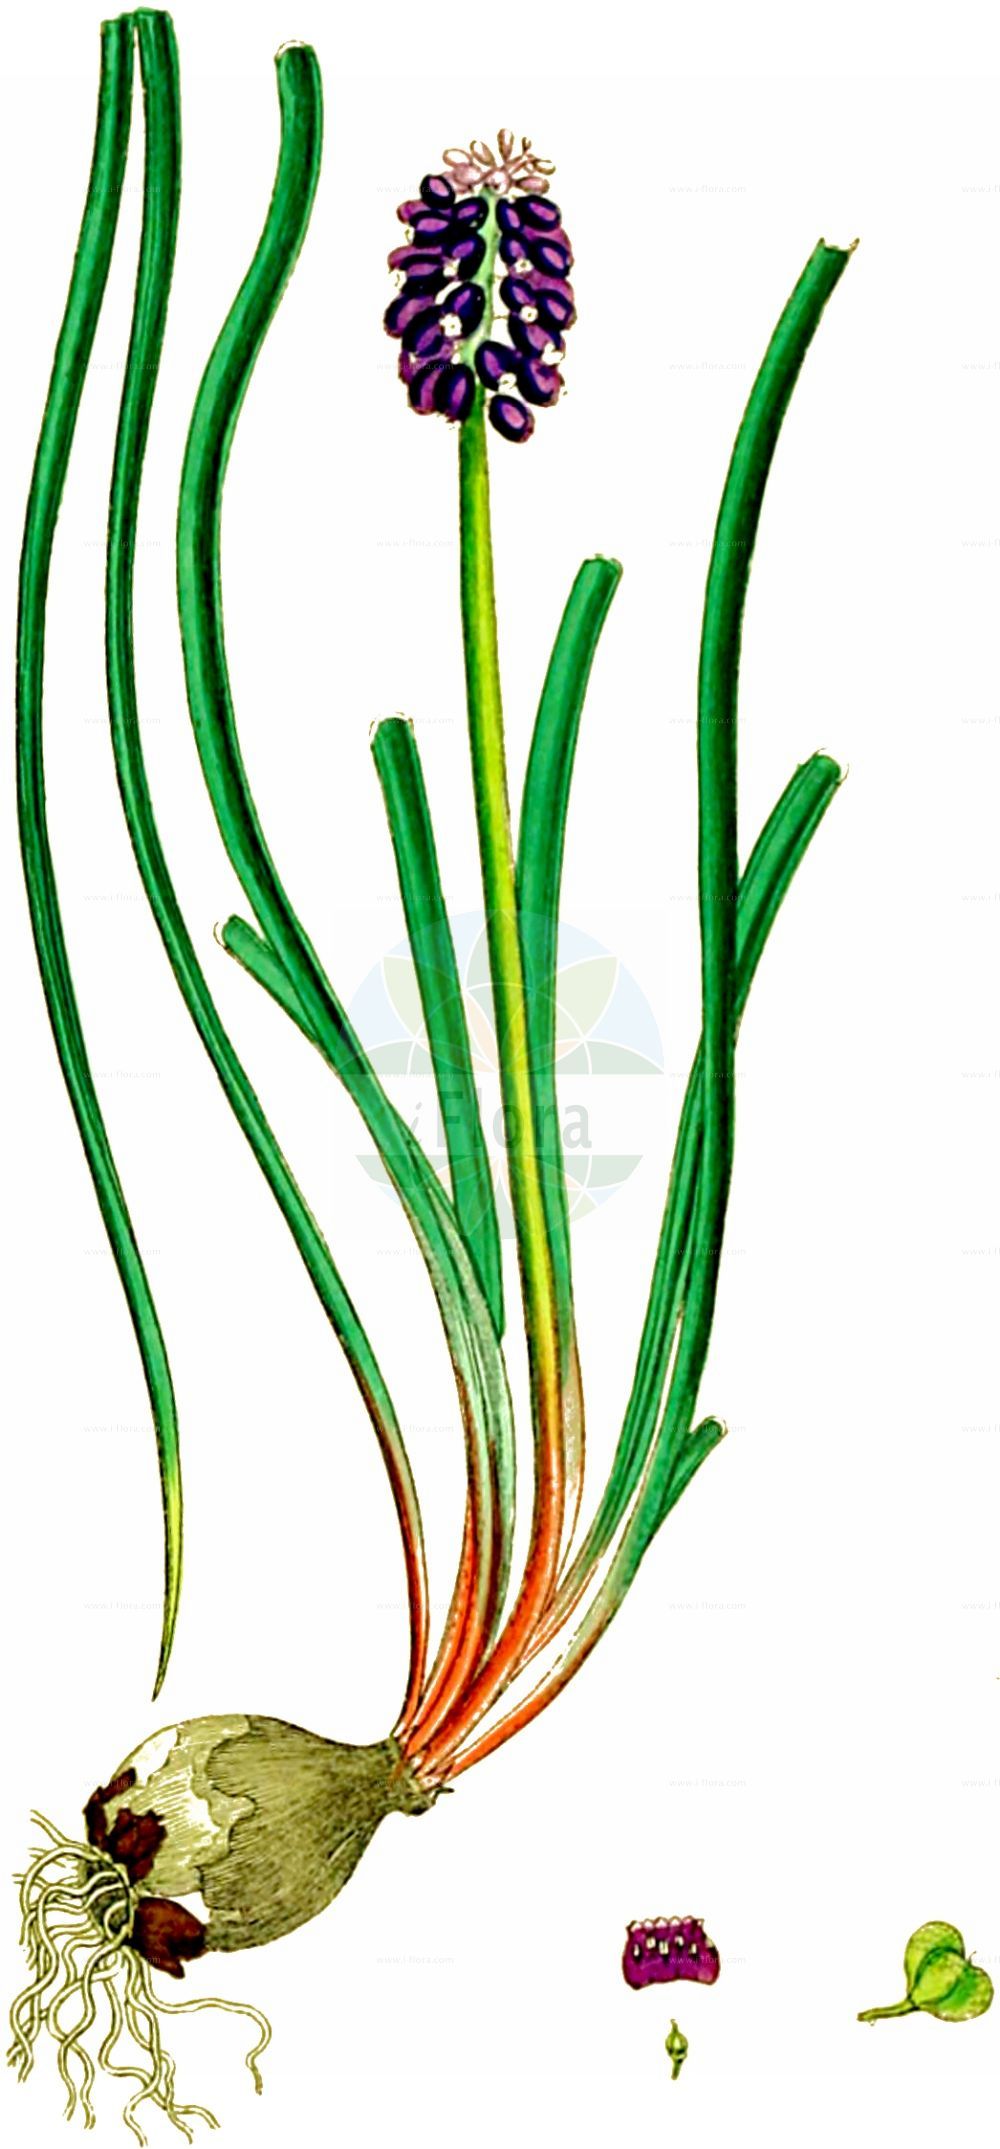 Historische Abbildung von Muscari neglectum (Weinbergs-Traubenhyazinthe - Grape-hyacinth). Das Bild zeigt Blatt, Bluete, Frucht und Same. ---- Historical Drawing of Muscari neglectum (Weinbergs-Traubenhyazinthe - Grape-hyacinth). The image is showing leaf, flower, fruit and seed.(Muscari neglectum,Weinbergs-Traubenhyazinthe,Grape-hyacinth,Botryanthus atlanticus,Botryanthus breviscapus,Botryanthus granatensis,Botryanthus mandraliscae,Botryanthus mordoanus,Botryanthus neglectus,Botryanthus odorus,Botryanthus racemosus,Botryanthus saulii,Botryanthus speciosus,Botryanthus strangwaysii,Etheiranthus jacquinii,Eubotrys odorata,Hyacinthus juncifolius,Hyacinthus neglectus,Hyacinthus racemosus,Leopoldia neumayeri,Muscari atlanticum,Muscari bootanensis,Muscari breviscapum,Muscari bucharicum,Muscari compactum,Muscari dolioliforme,Muscari elwesii,Muscari flaccidum,Muscari fontqueri,Muscari granatense,Muscari grandifolium,Muscari grossheimii,Muscari letourneuxii,Muscari leucostomum,Muscari macranthum,Muscari mordoanum,Muscari neglectum,Muscari neumayeri,Muscari nivale,Muscari odoratum,Muscari populeum,Muscari racemosum,Muscari skorpili,Muscari speciosum,Muscari strangwaysii,Muscari szovitsianum,Muscari vandasii,Scilla suaveolens,Weinbergs-Traubenhyazinthe,Grape-hyacinth,Starch Grape Hyacinth,Common Grape Hyacinth,Muscari,Traubenhyazinthe,Grape Hyacinth,Asparagaceae,Spargelgewächse,Asparagus family,Blatt,Bluete,Frucht,Same,leaf,flower,fruit,seed,Sowerby (1790-1813))